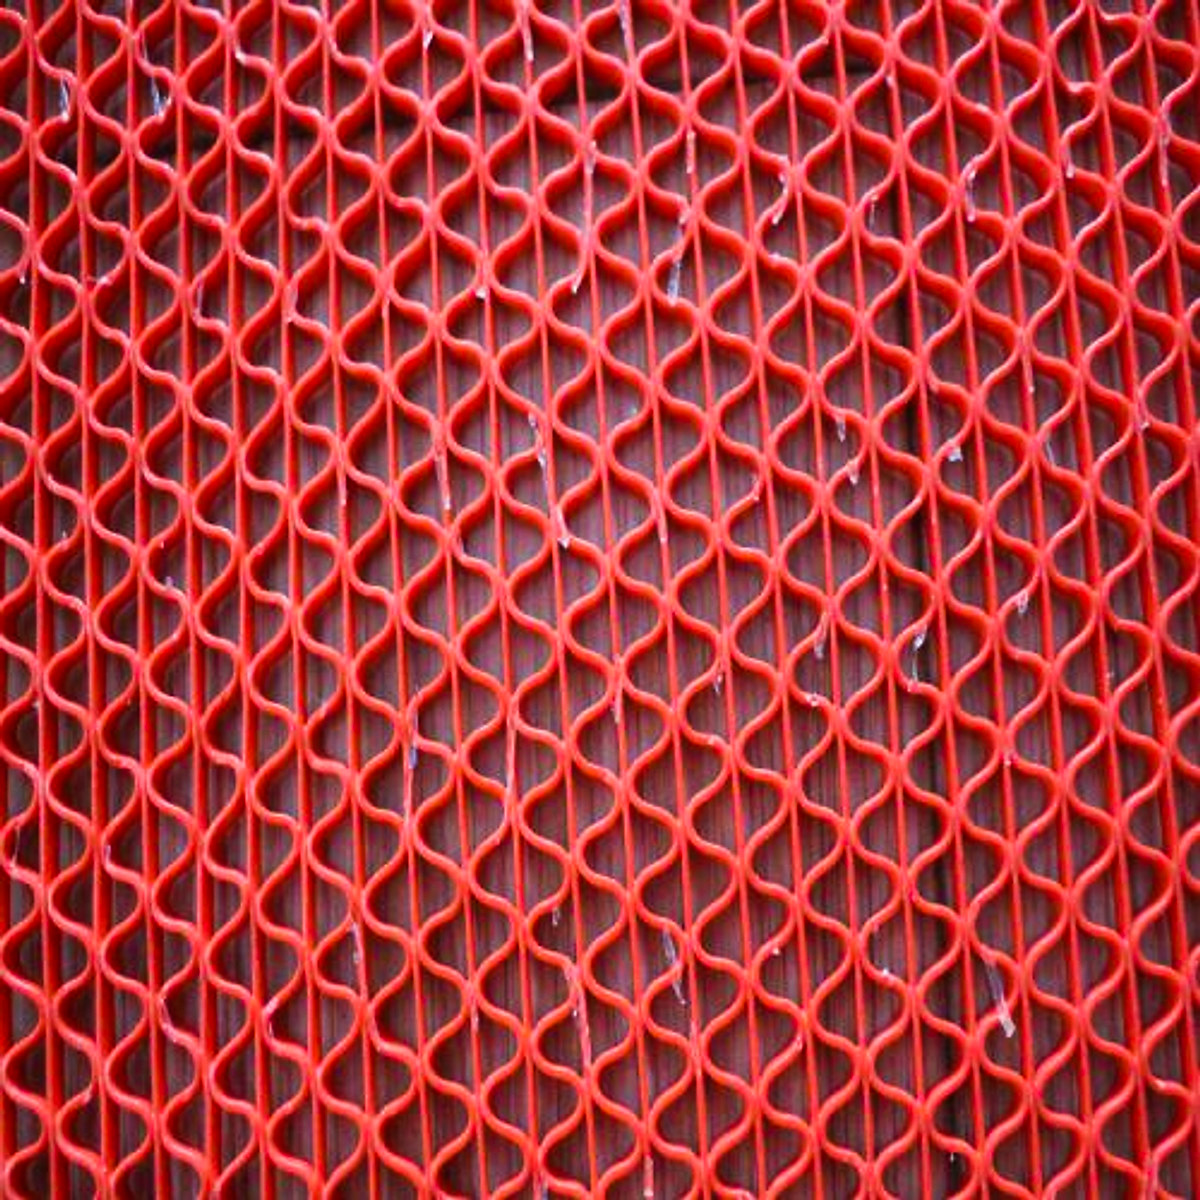 Thảm nhựa lưới chống trơn màu đỏ cho nhà cửa, nhà tắm, văn phòng, hồ bơi